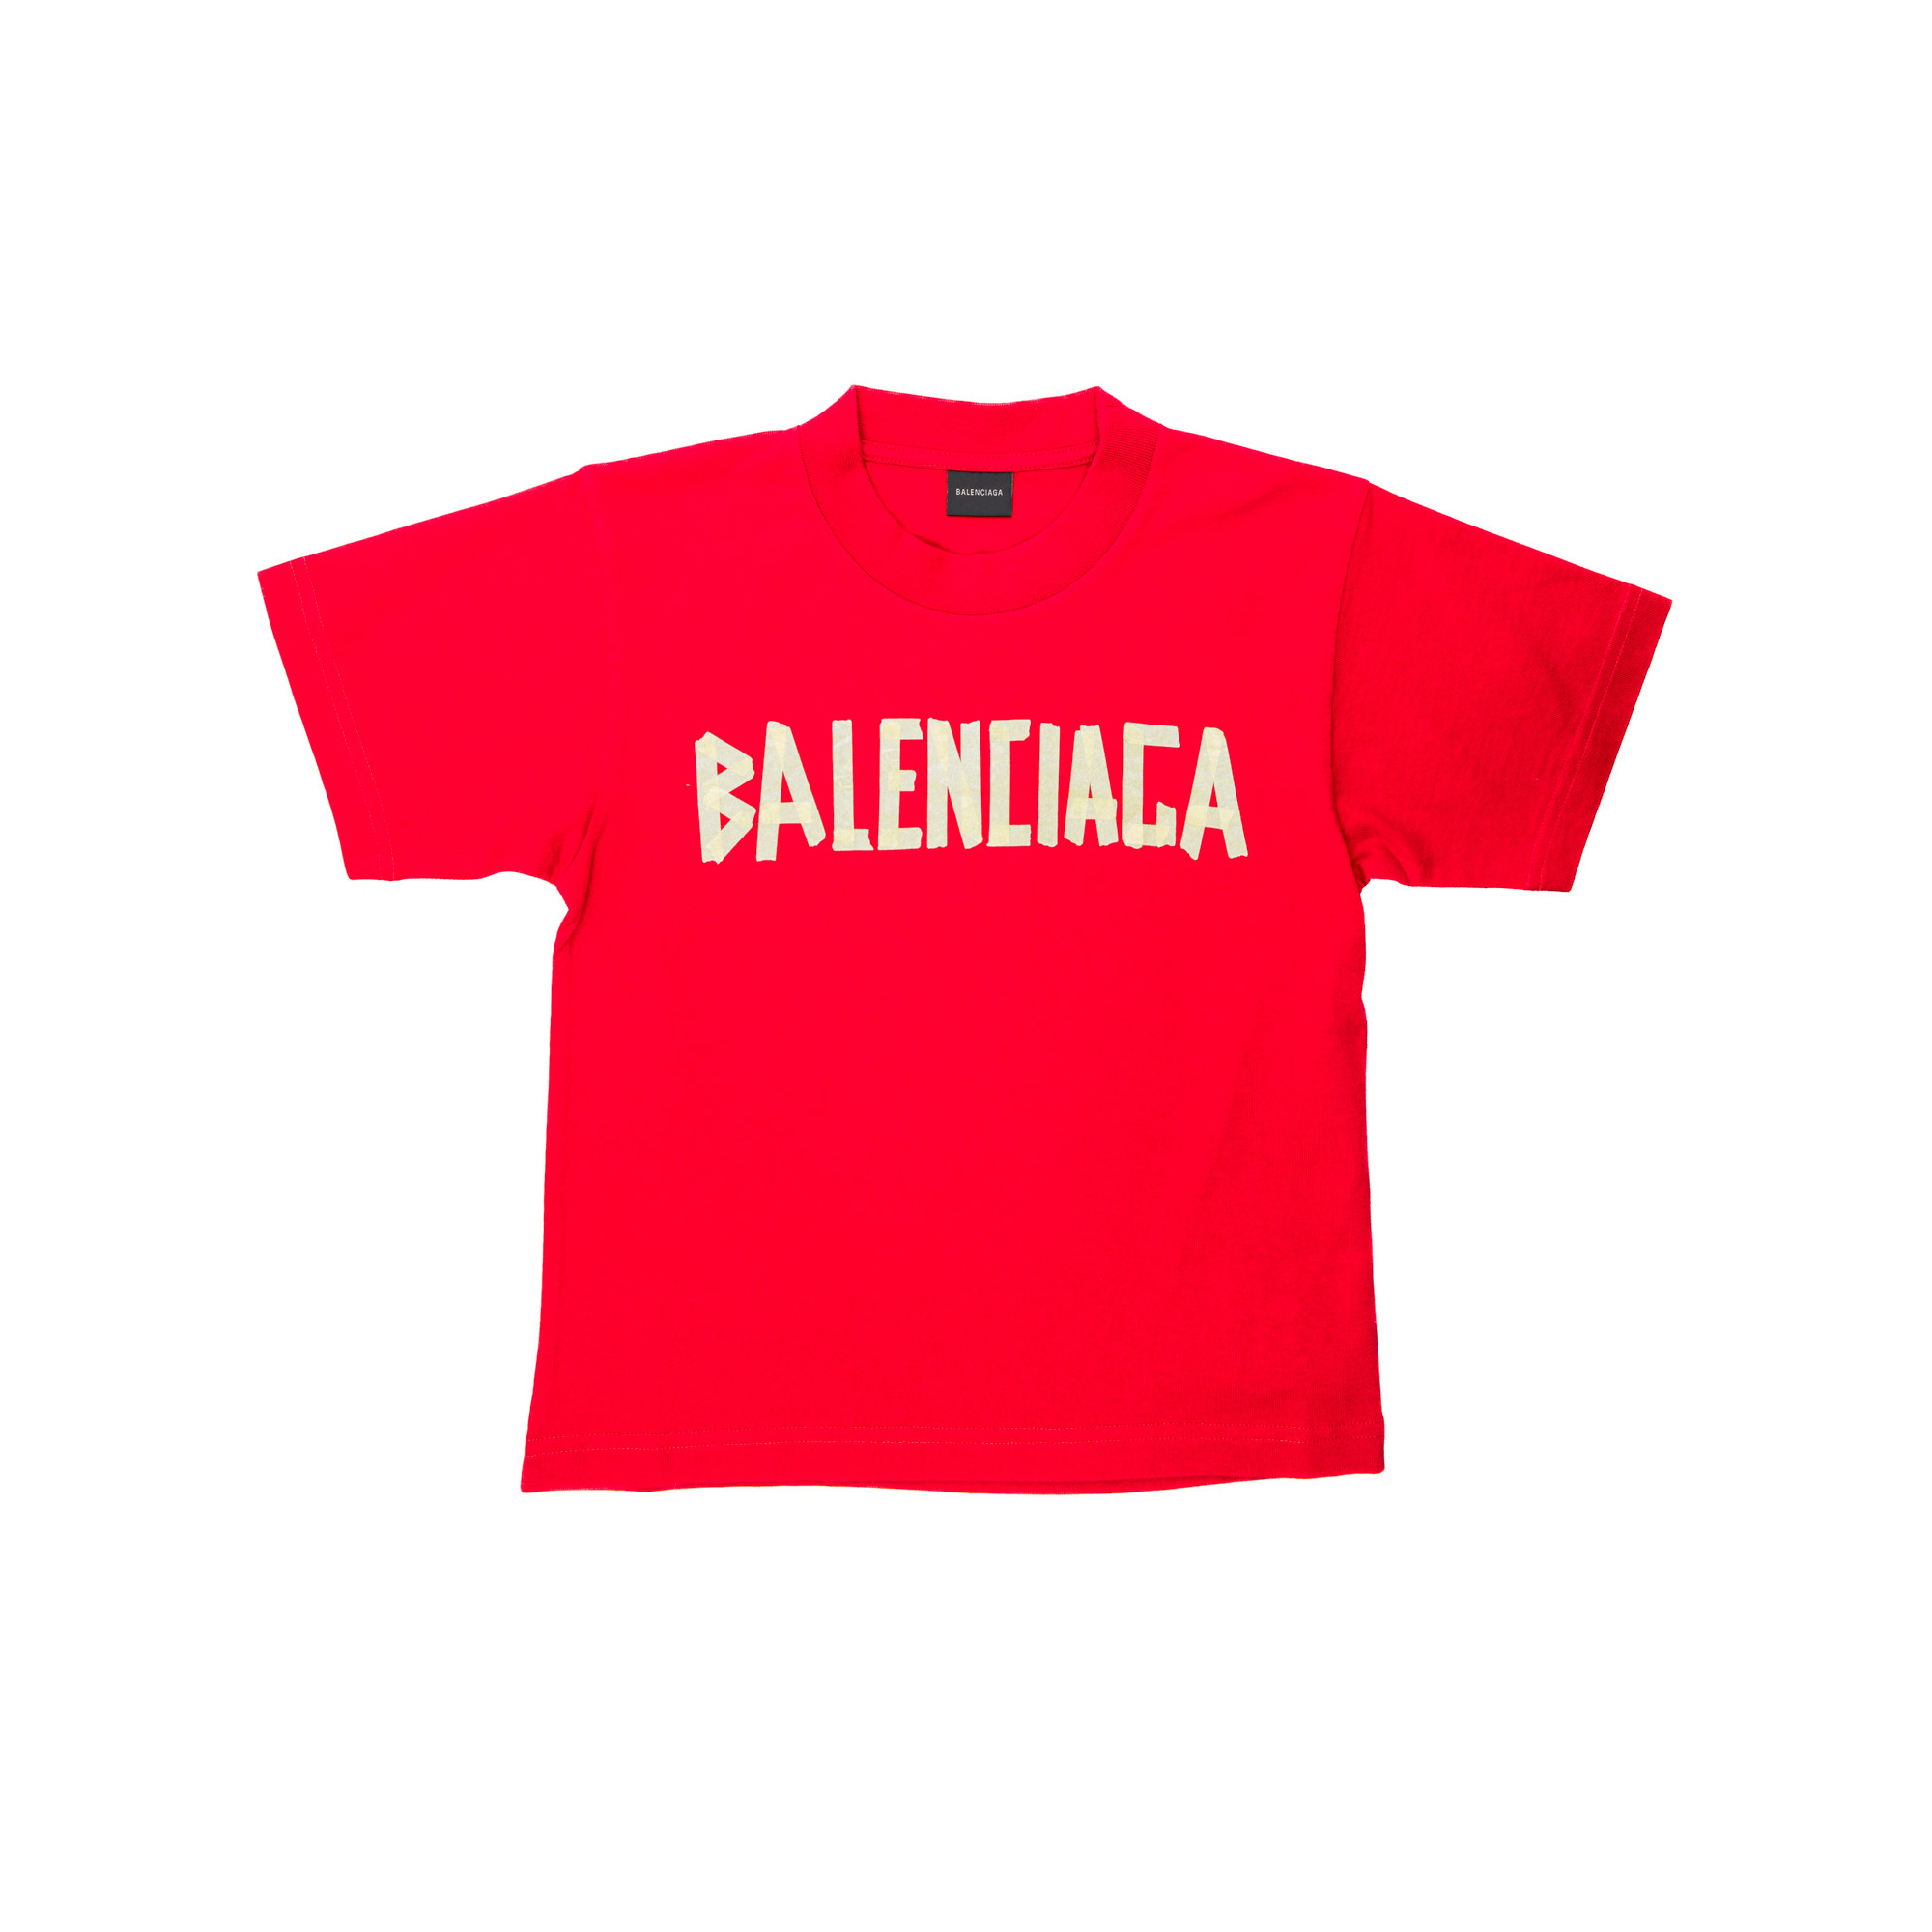 Authenticatie Hoorzitting door elkaar haspelen Balenciaga T-shirt Rood | Derodeloper.com